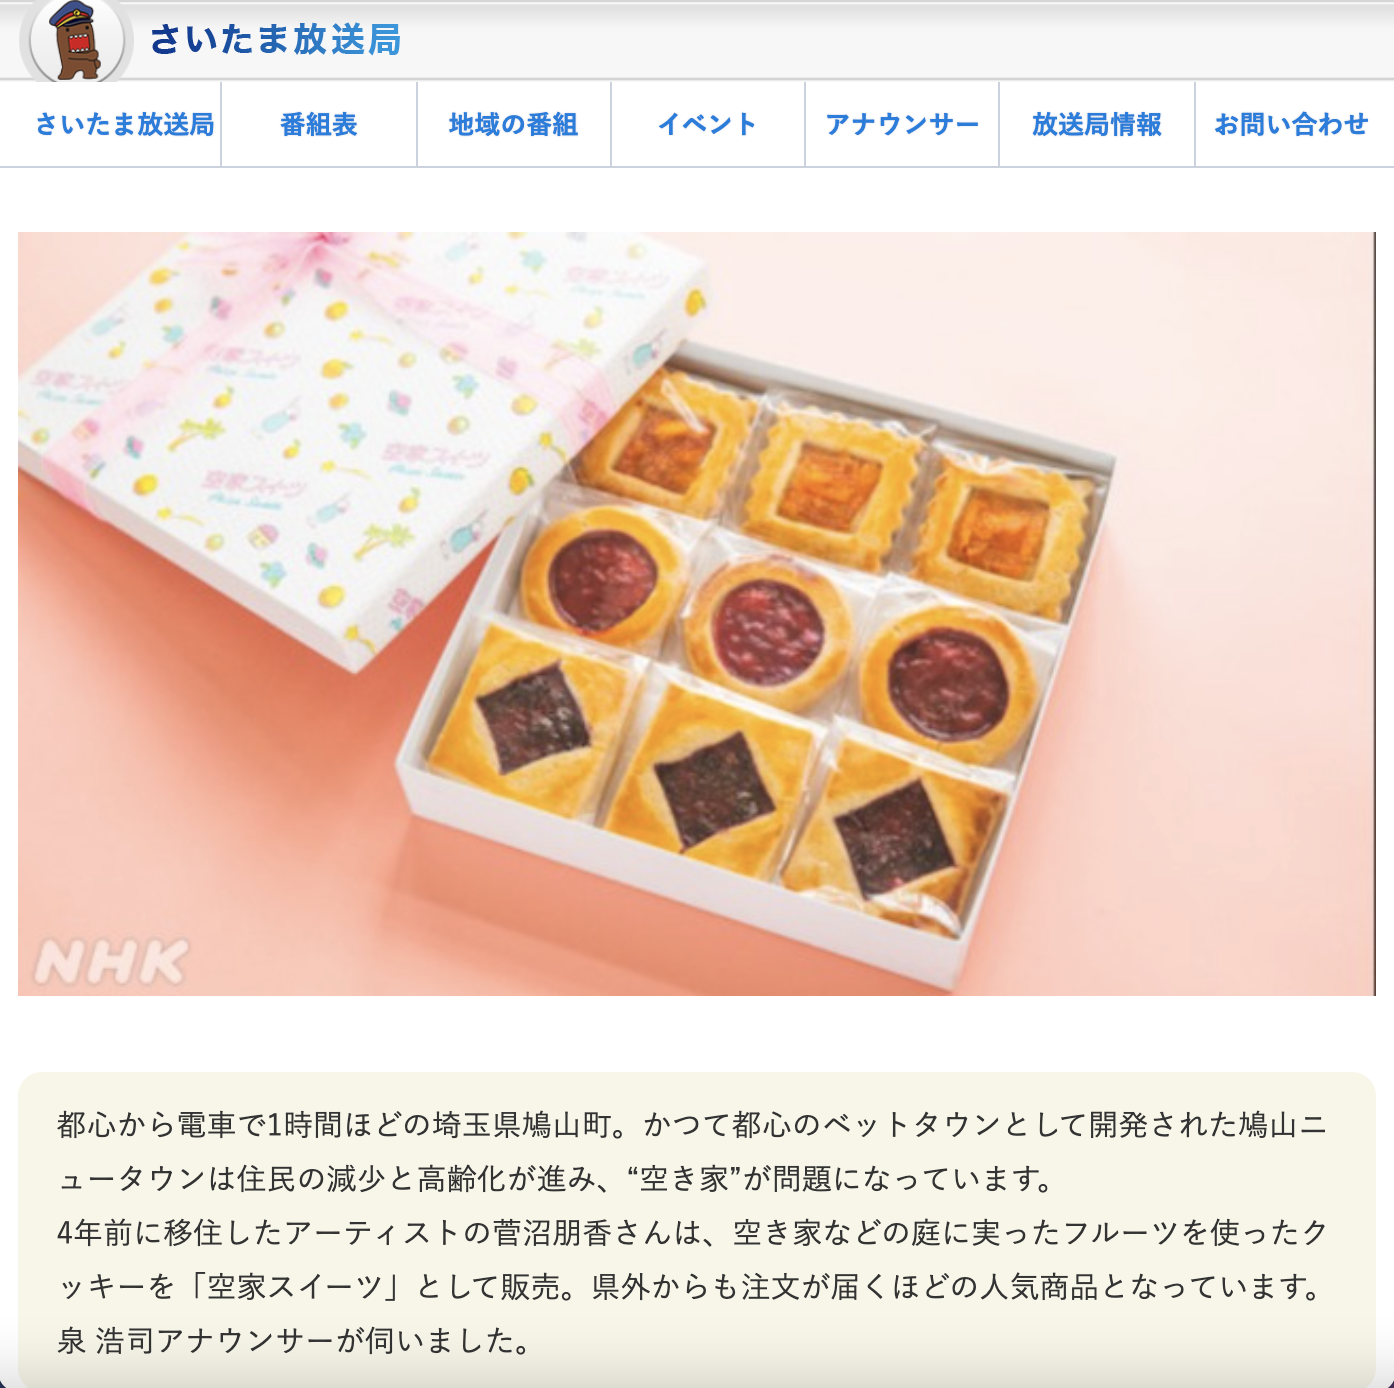 NHK首都圏ナビさいたま放送局のブログに掲載されました